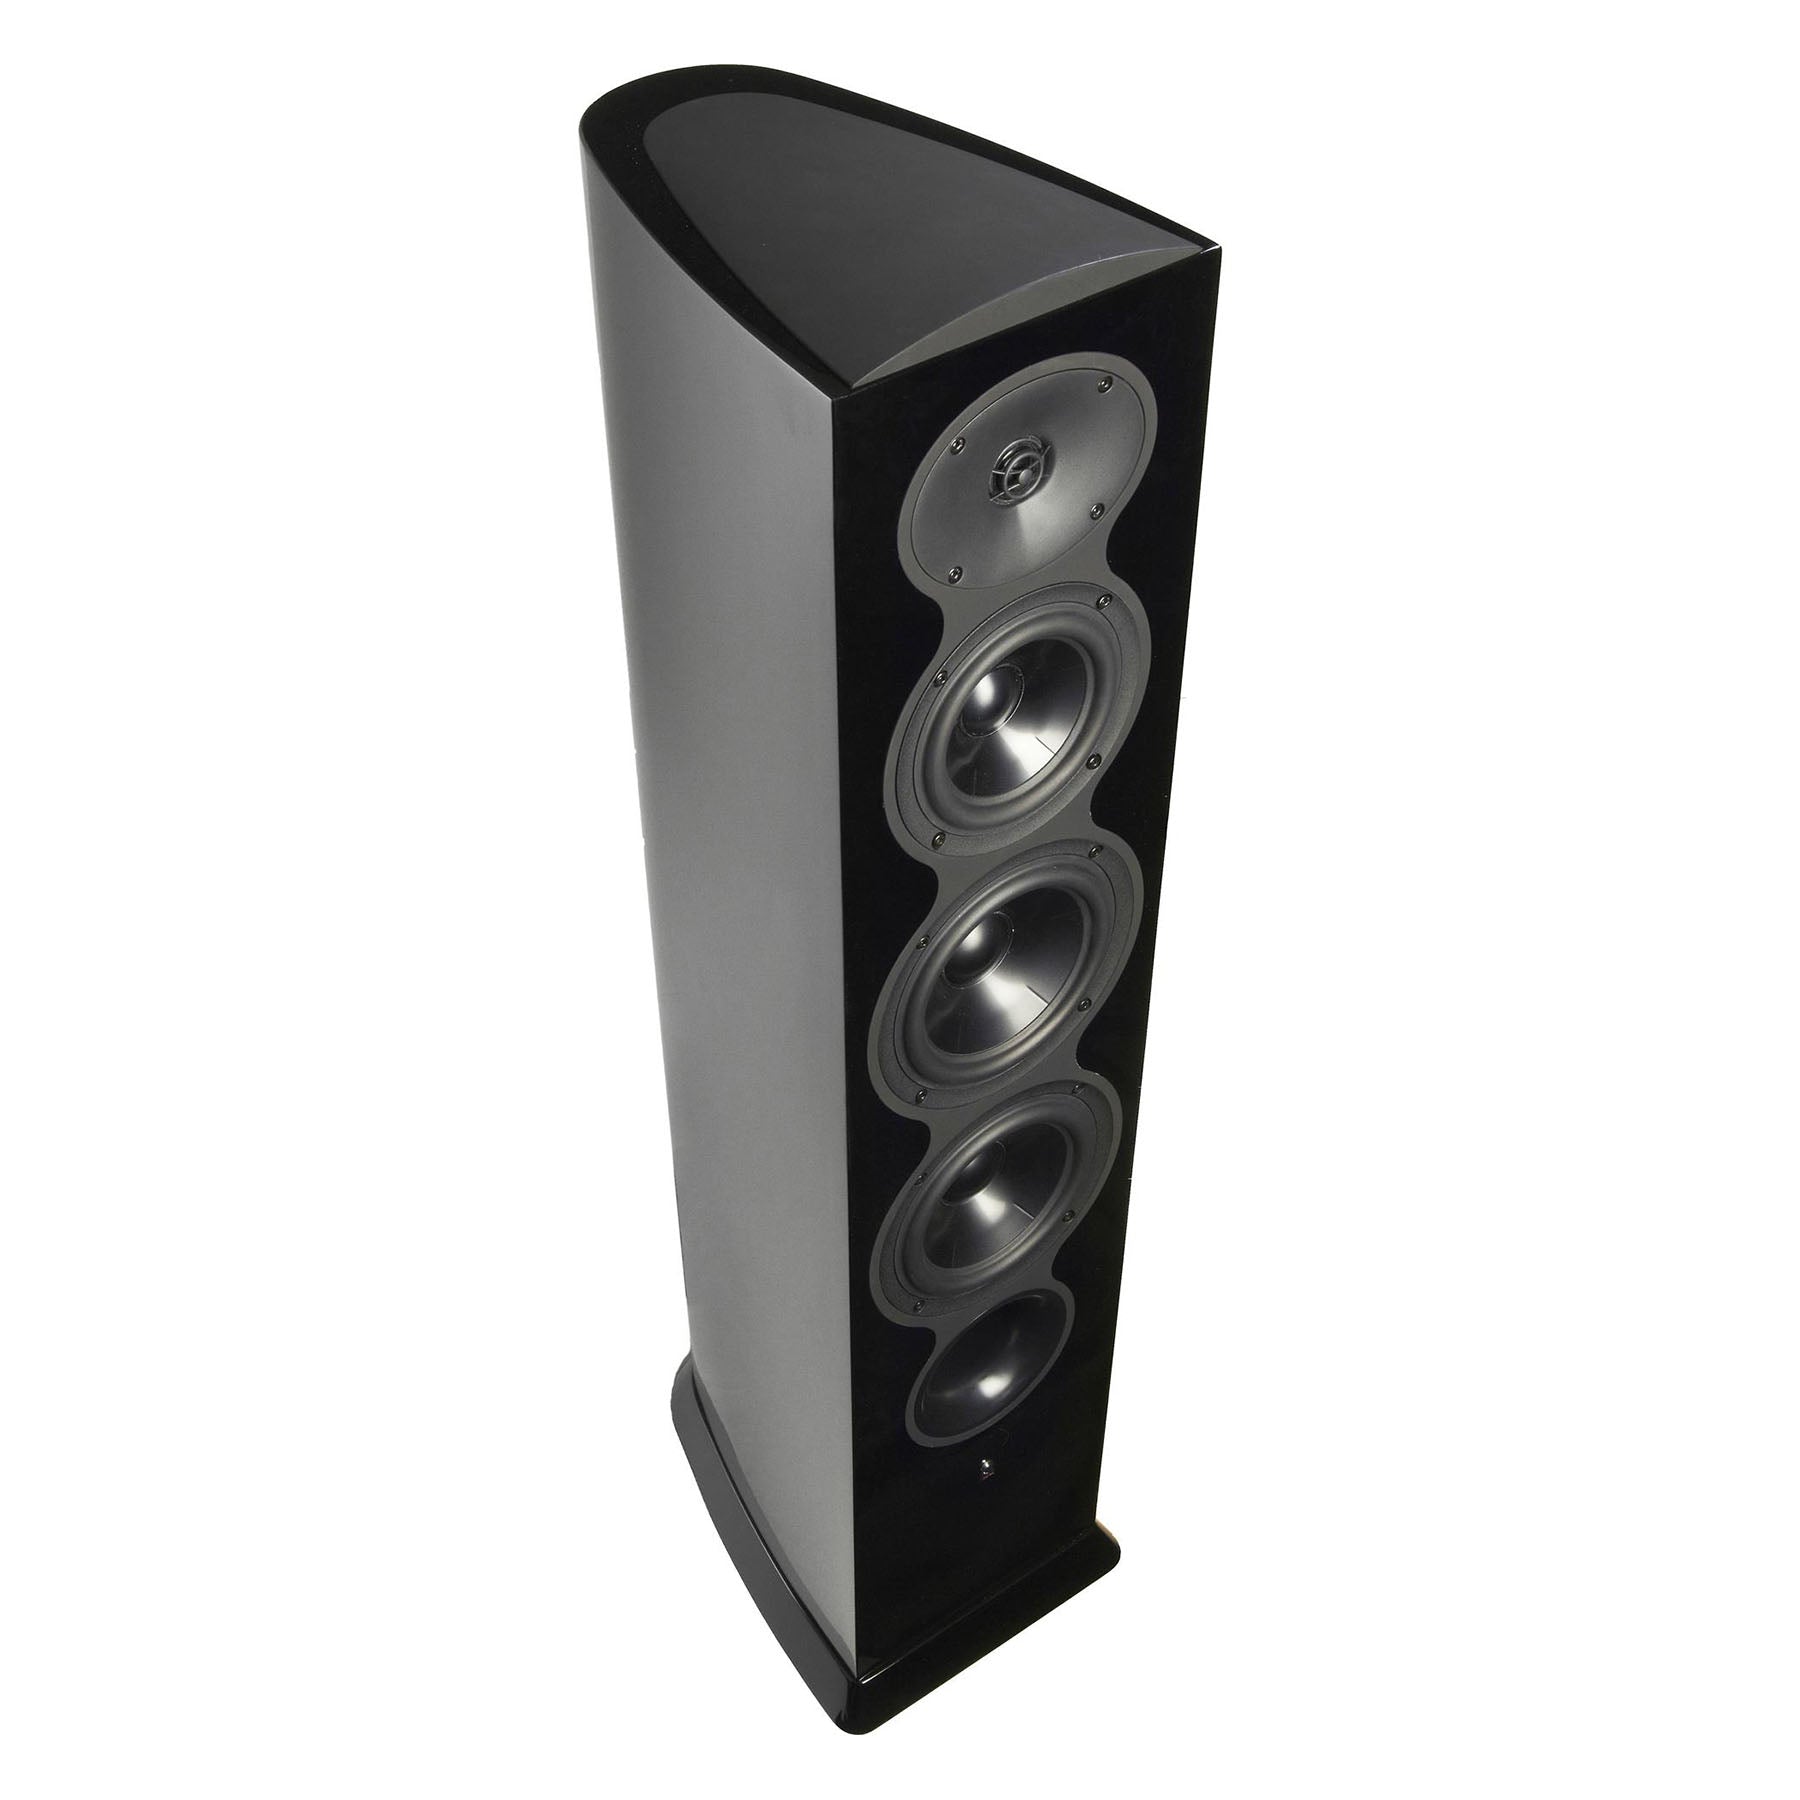 Revel F206 3-Way 6.5" Floorstanding Tower Loudspeaker (pair)